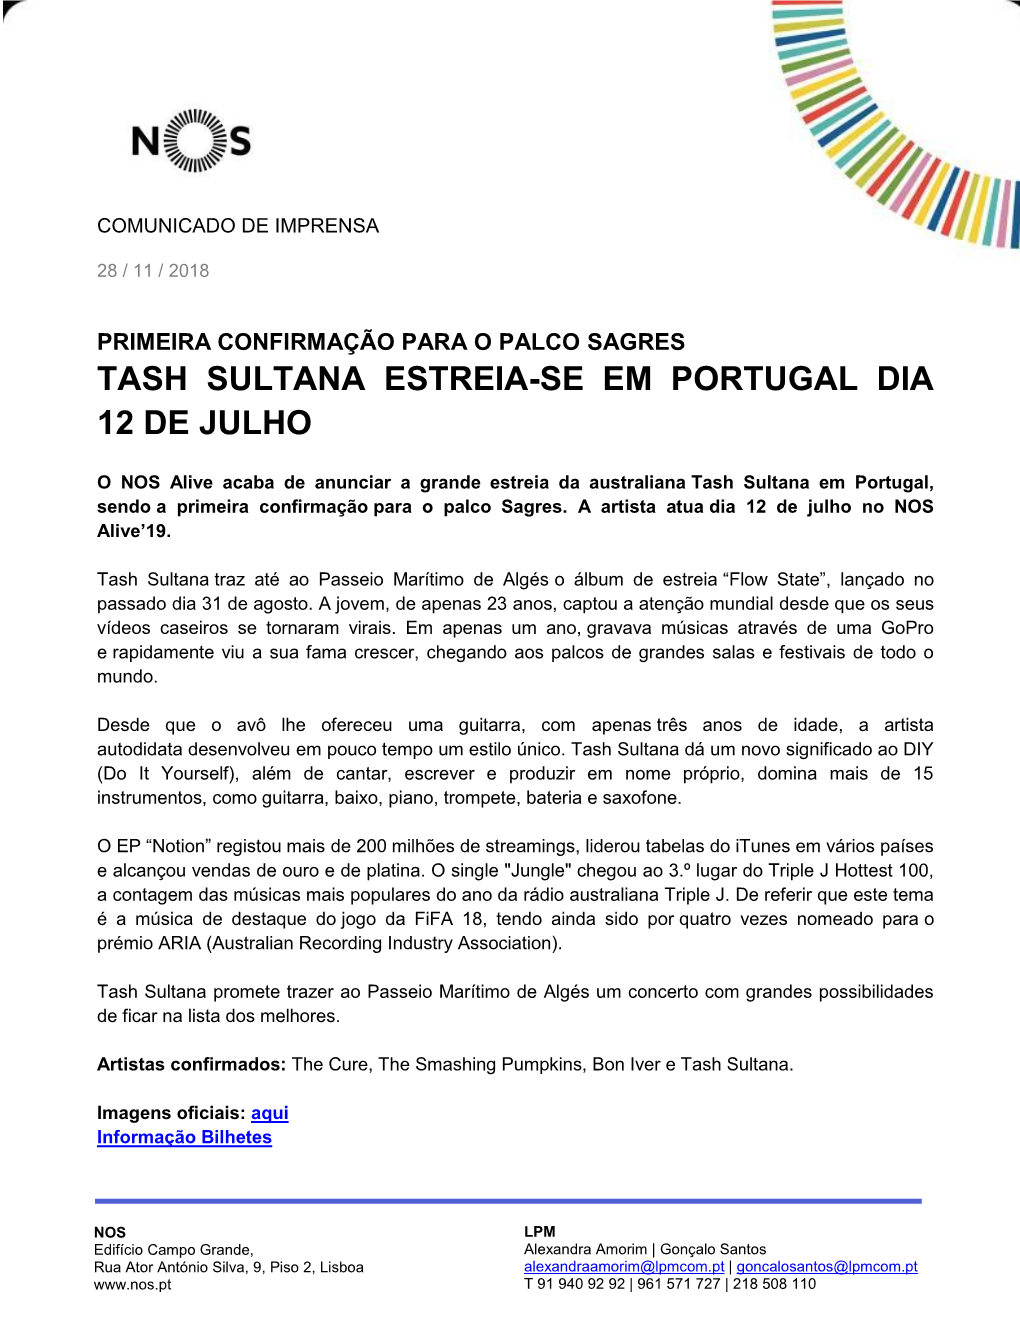 Tash Sultana Estreia-Se Em Portugal Dia 12 De Julho